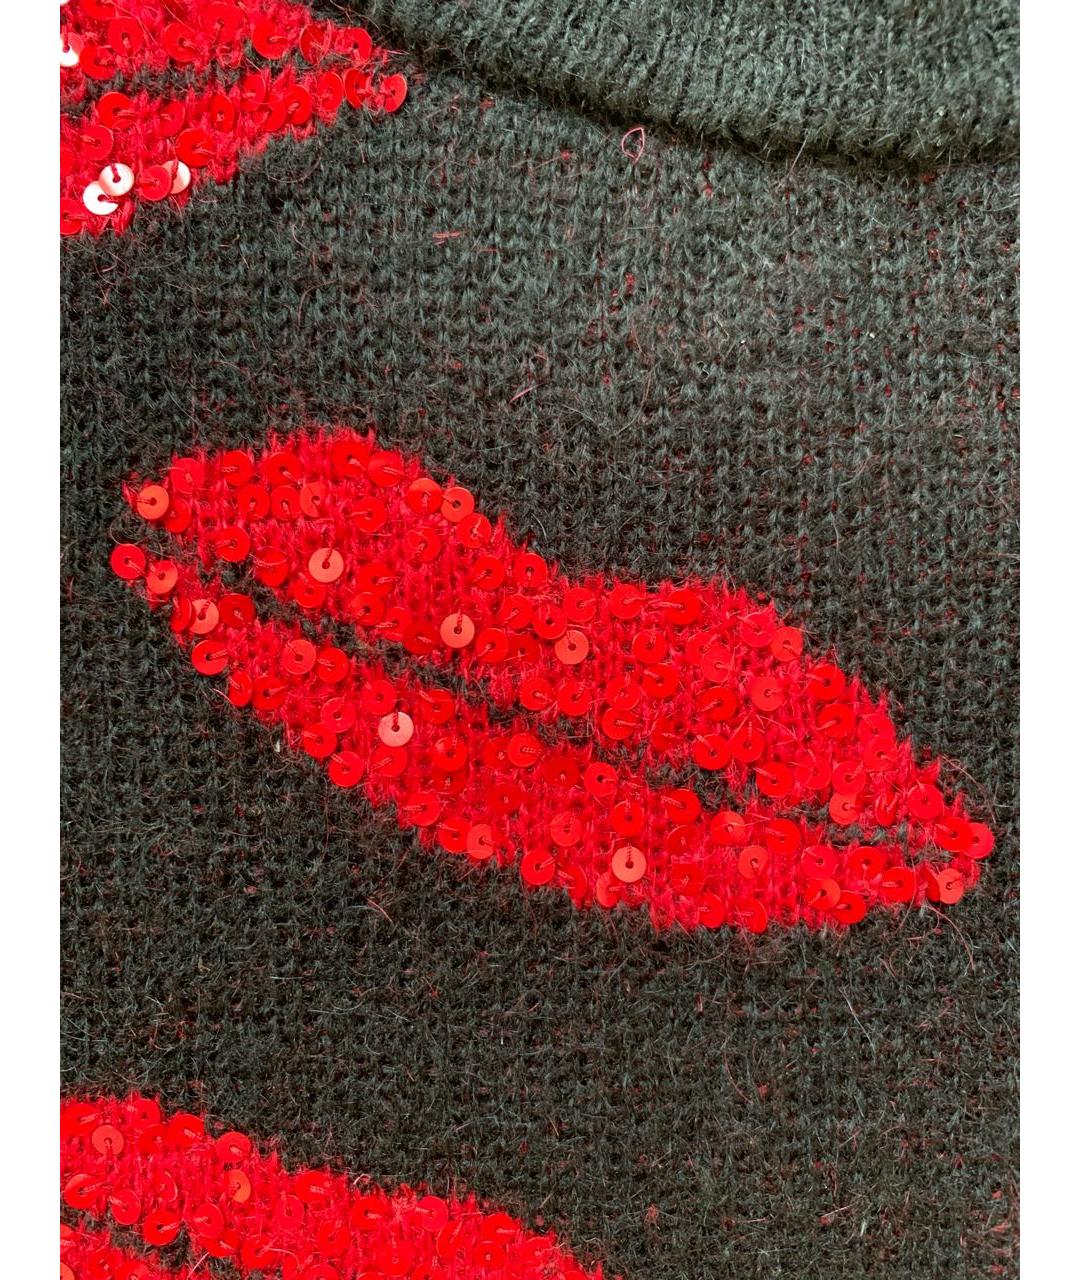 SAINT LAURENT Черный шерстяной джемпер / свитер, фото 5